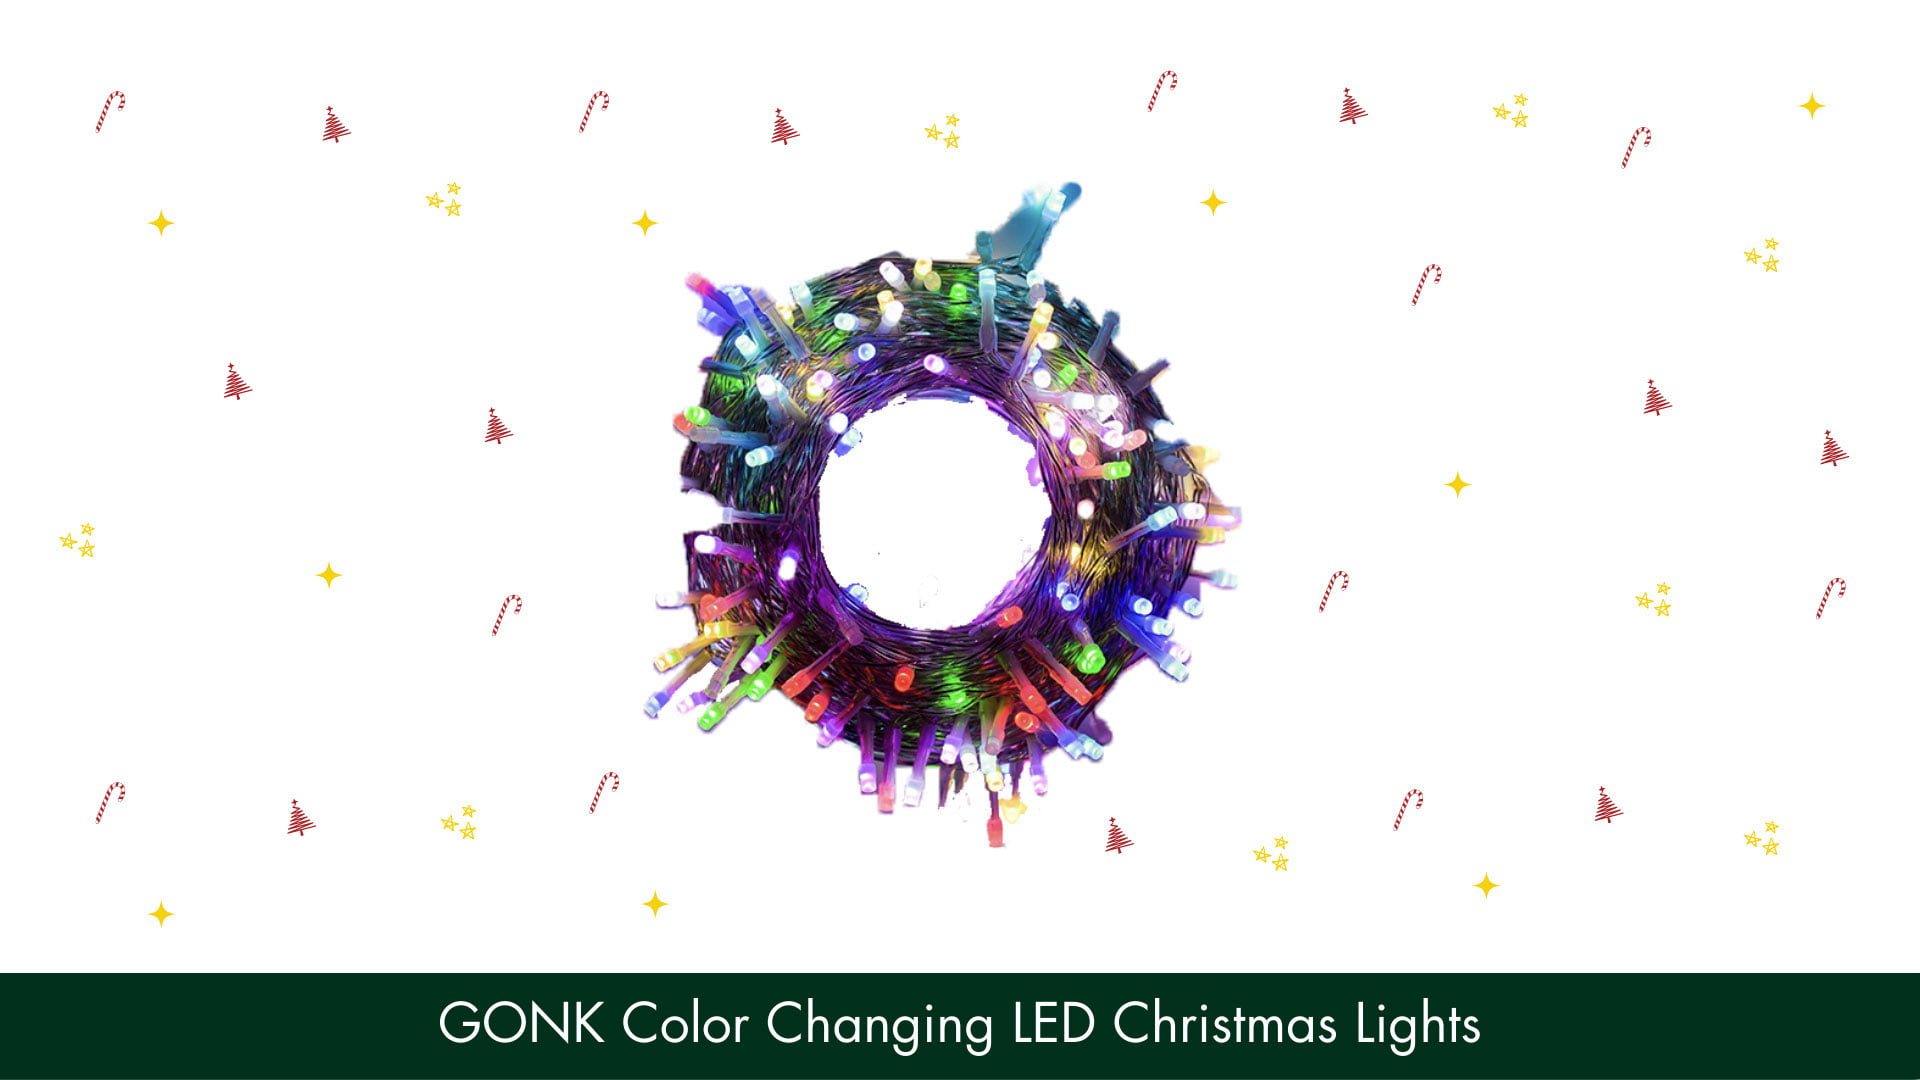 GONK Color Changing LED Christmas Lights